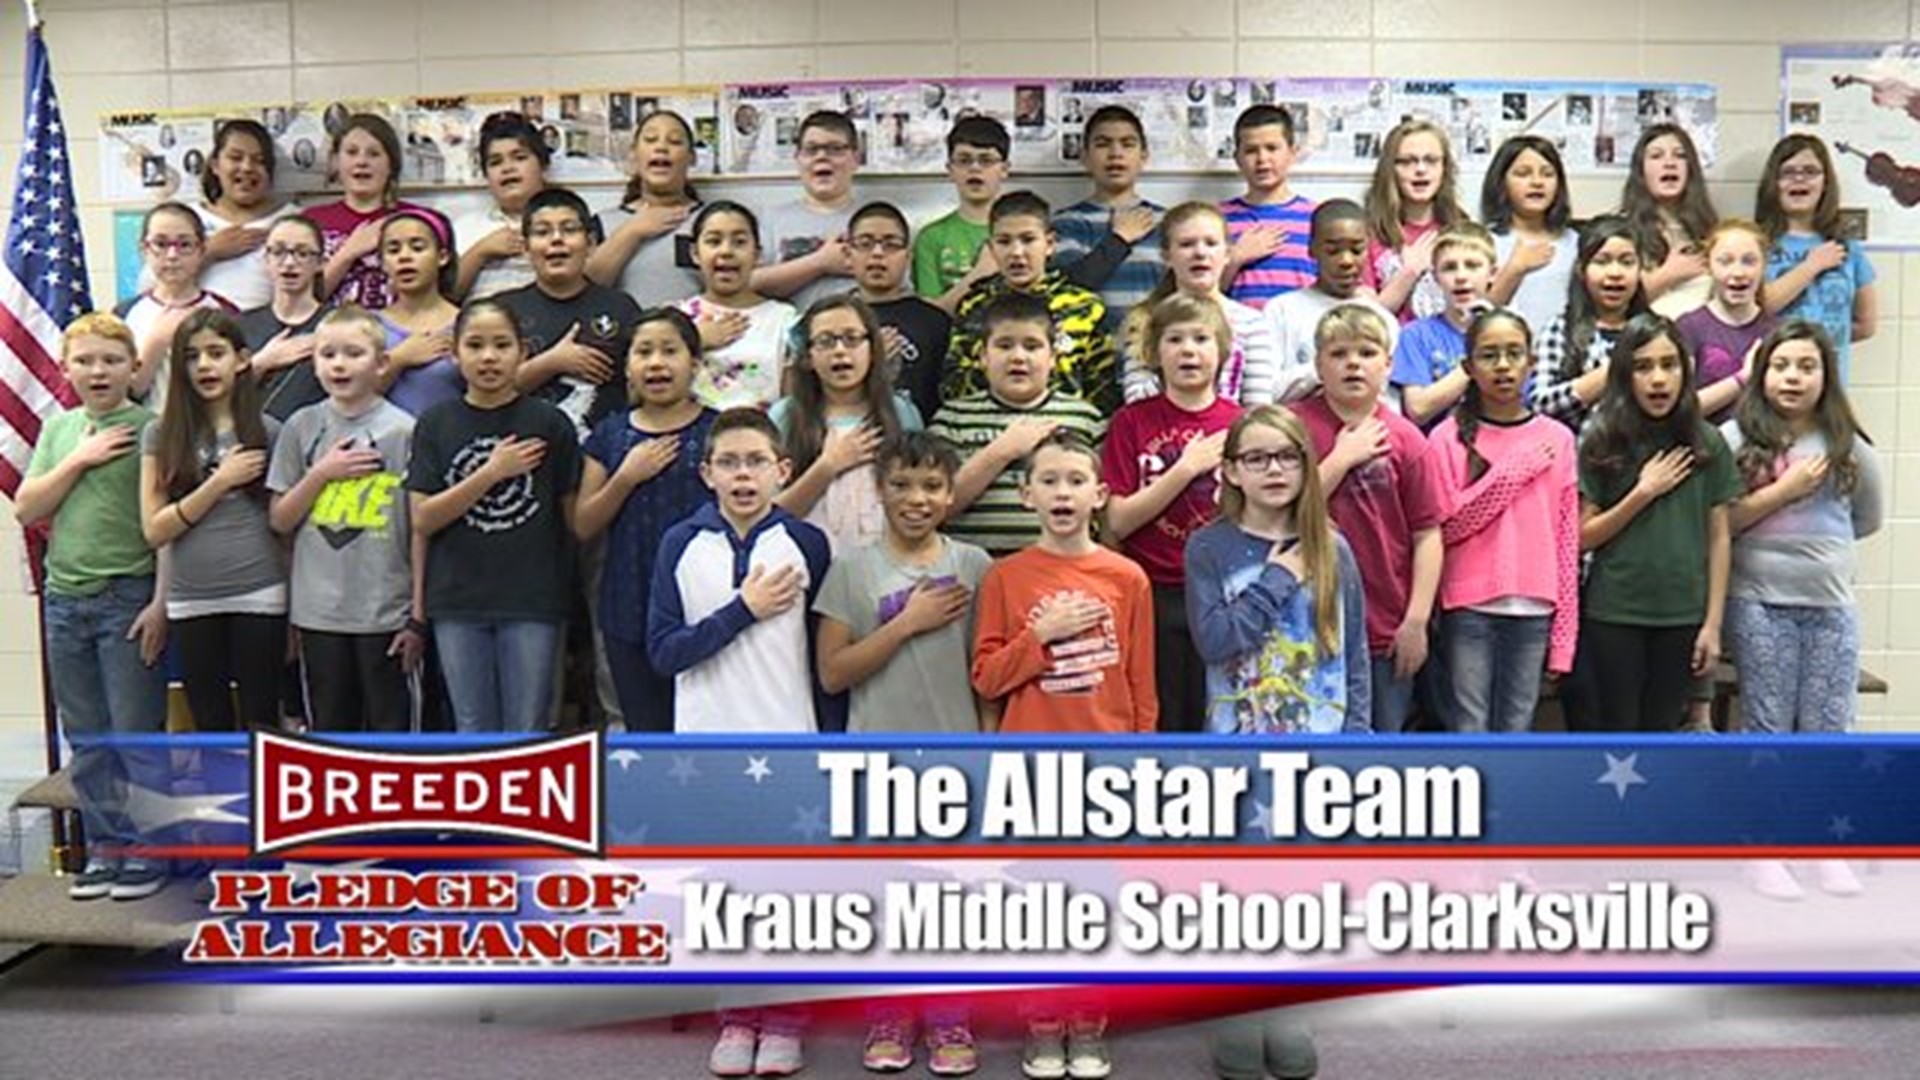 Kraus Middle School, Clarksville - The AllstarTeam